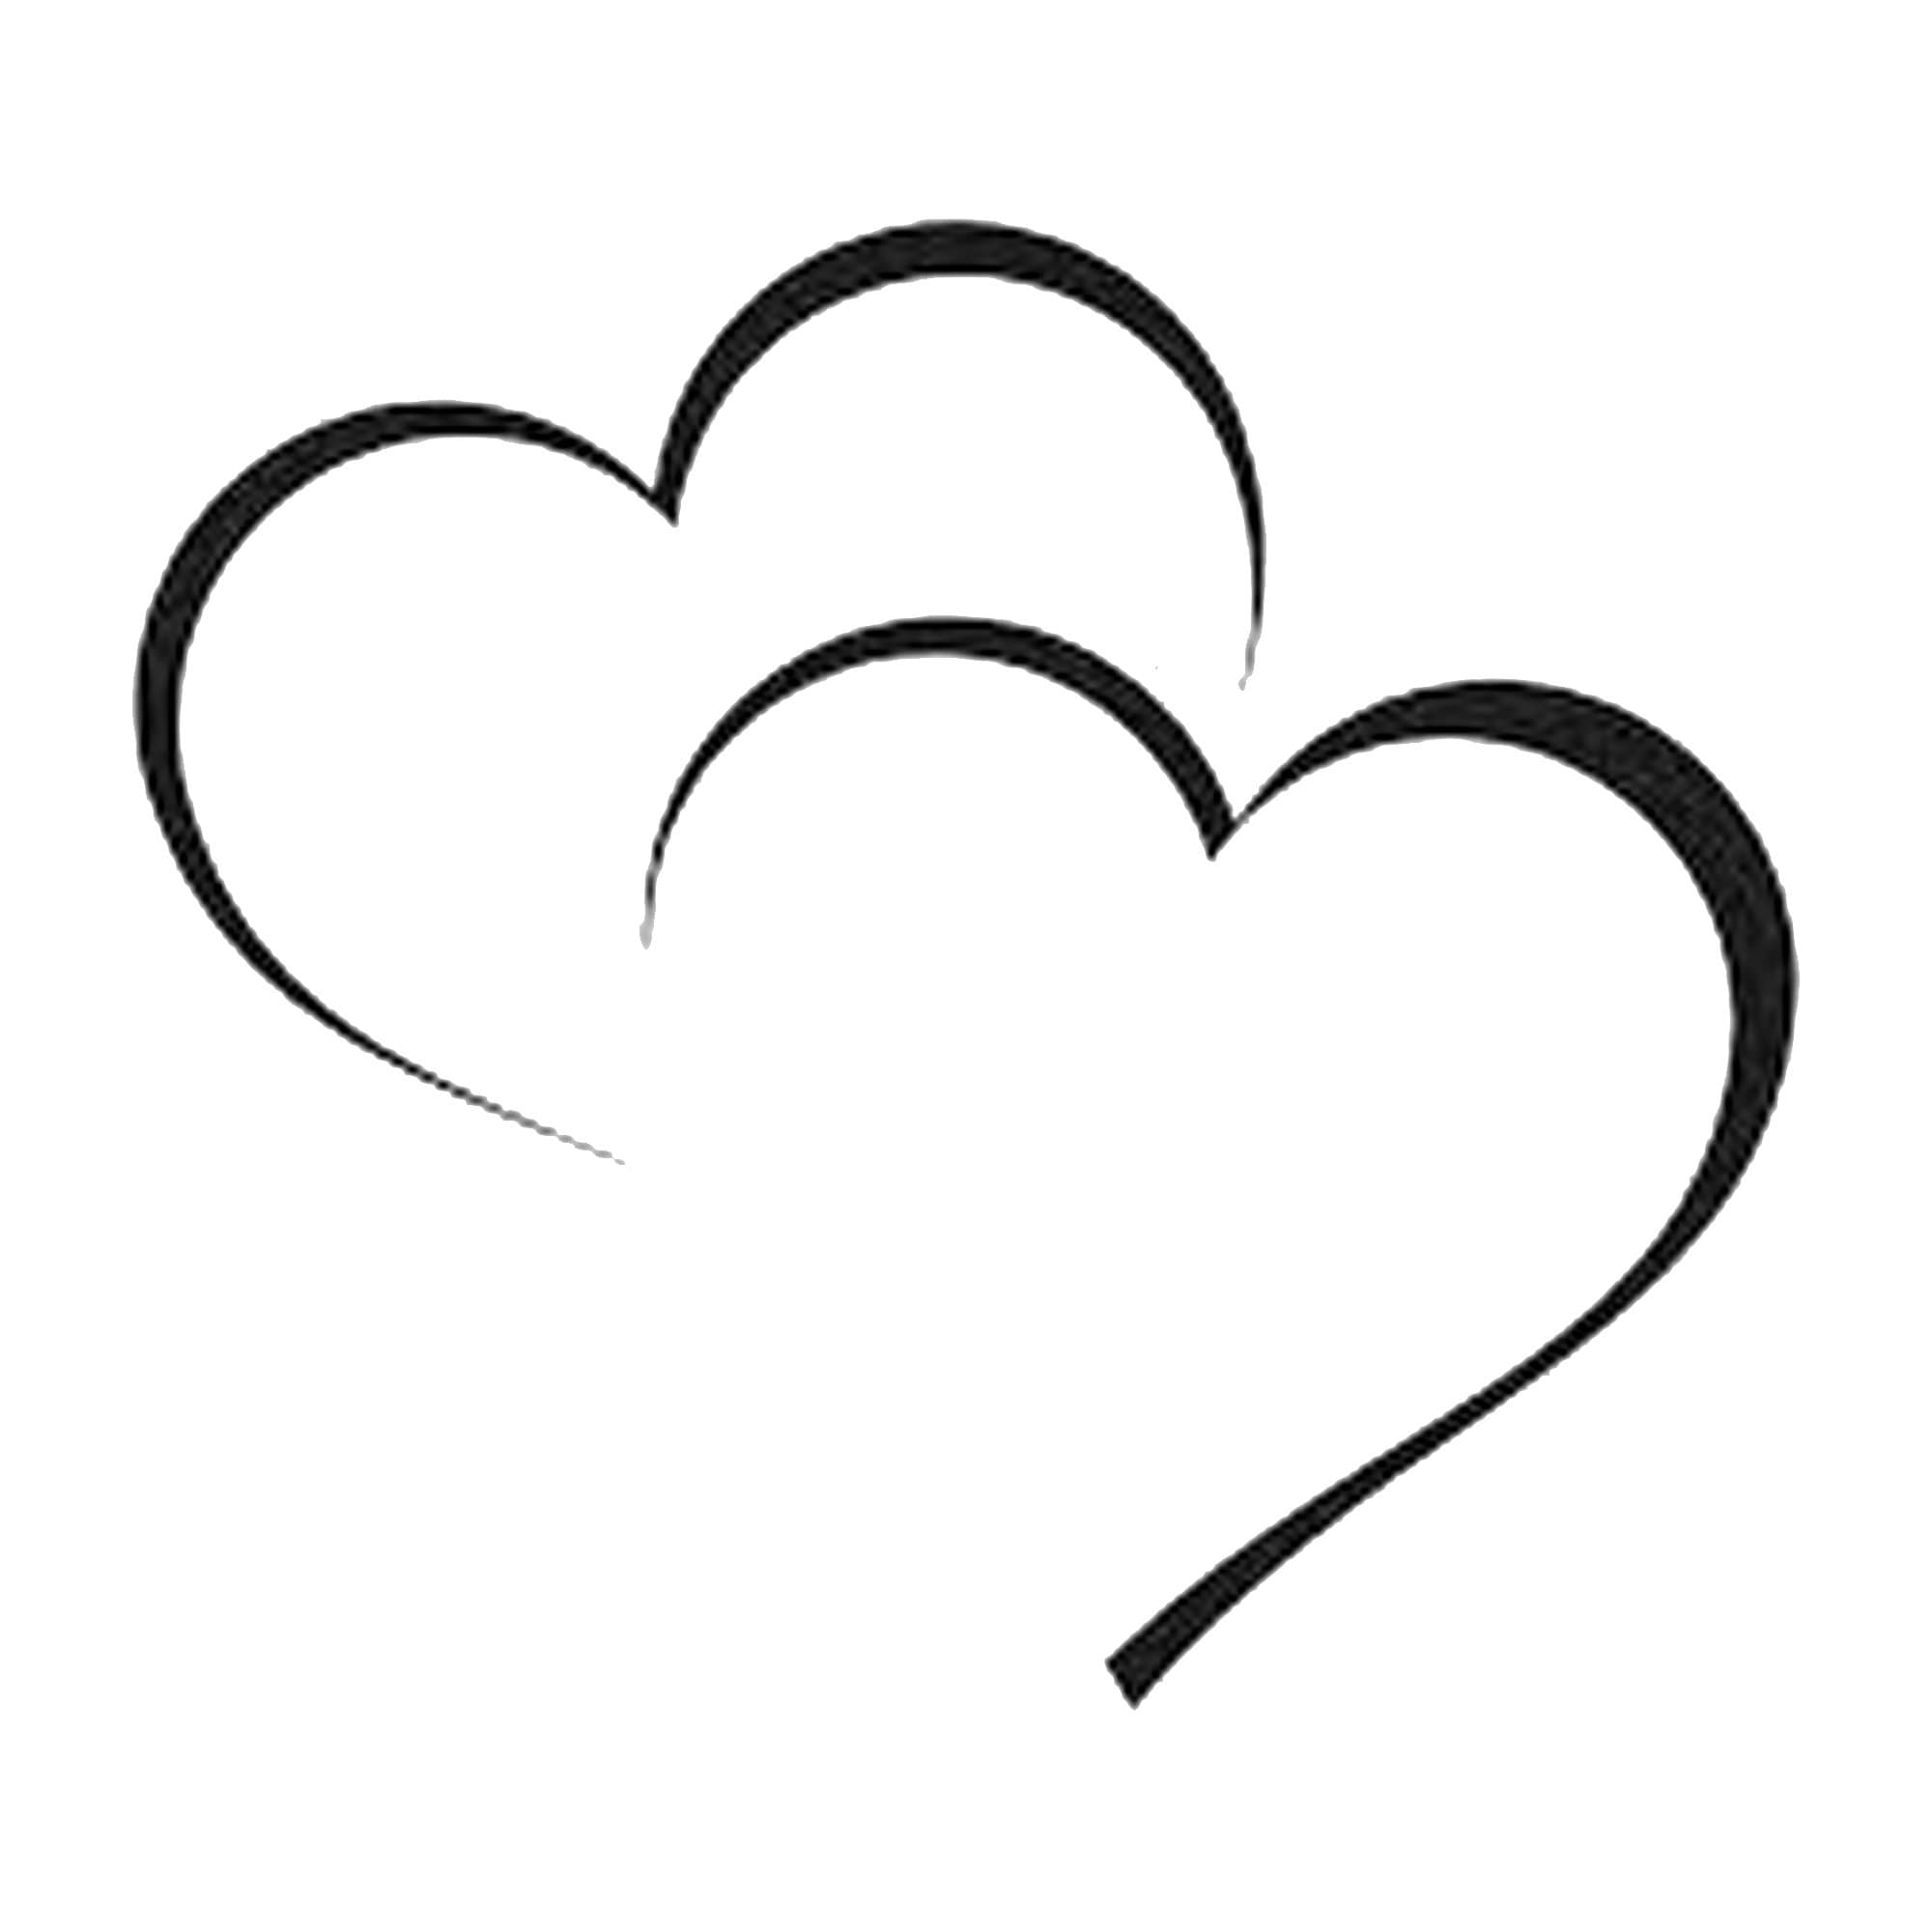 Black Heart Outline Clipart in Illustrator, SVG, JPG, EPS, PNG - Download